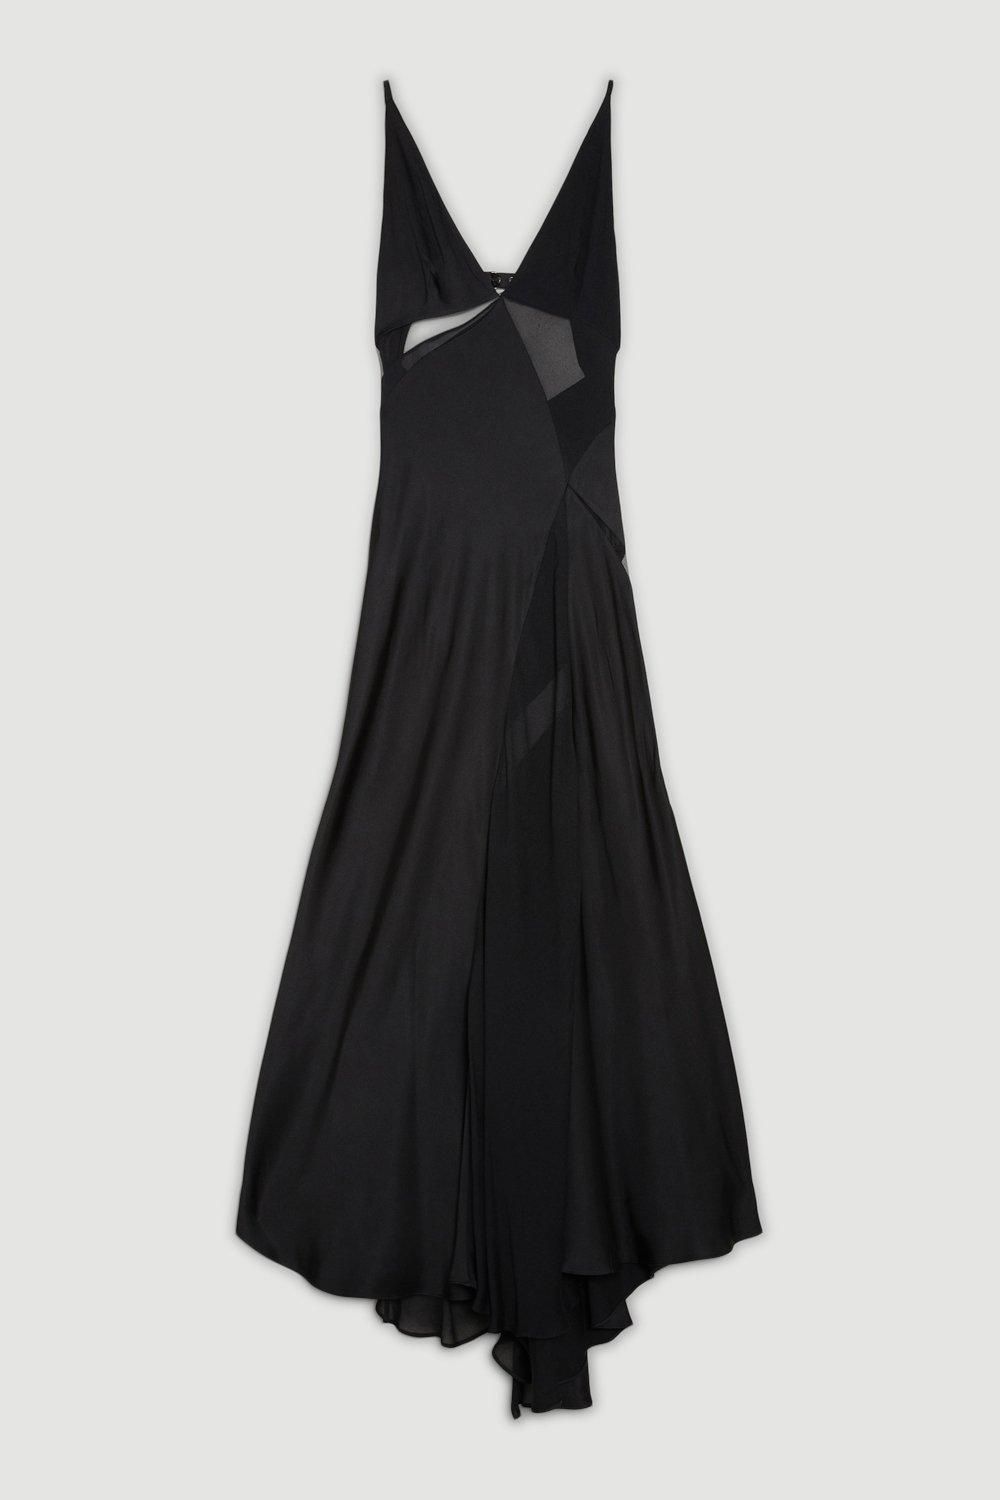 OOTO LONDON Sheer Panelled Woven Maxi Dress | Karen Millen UK + IE + DE + NL